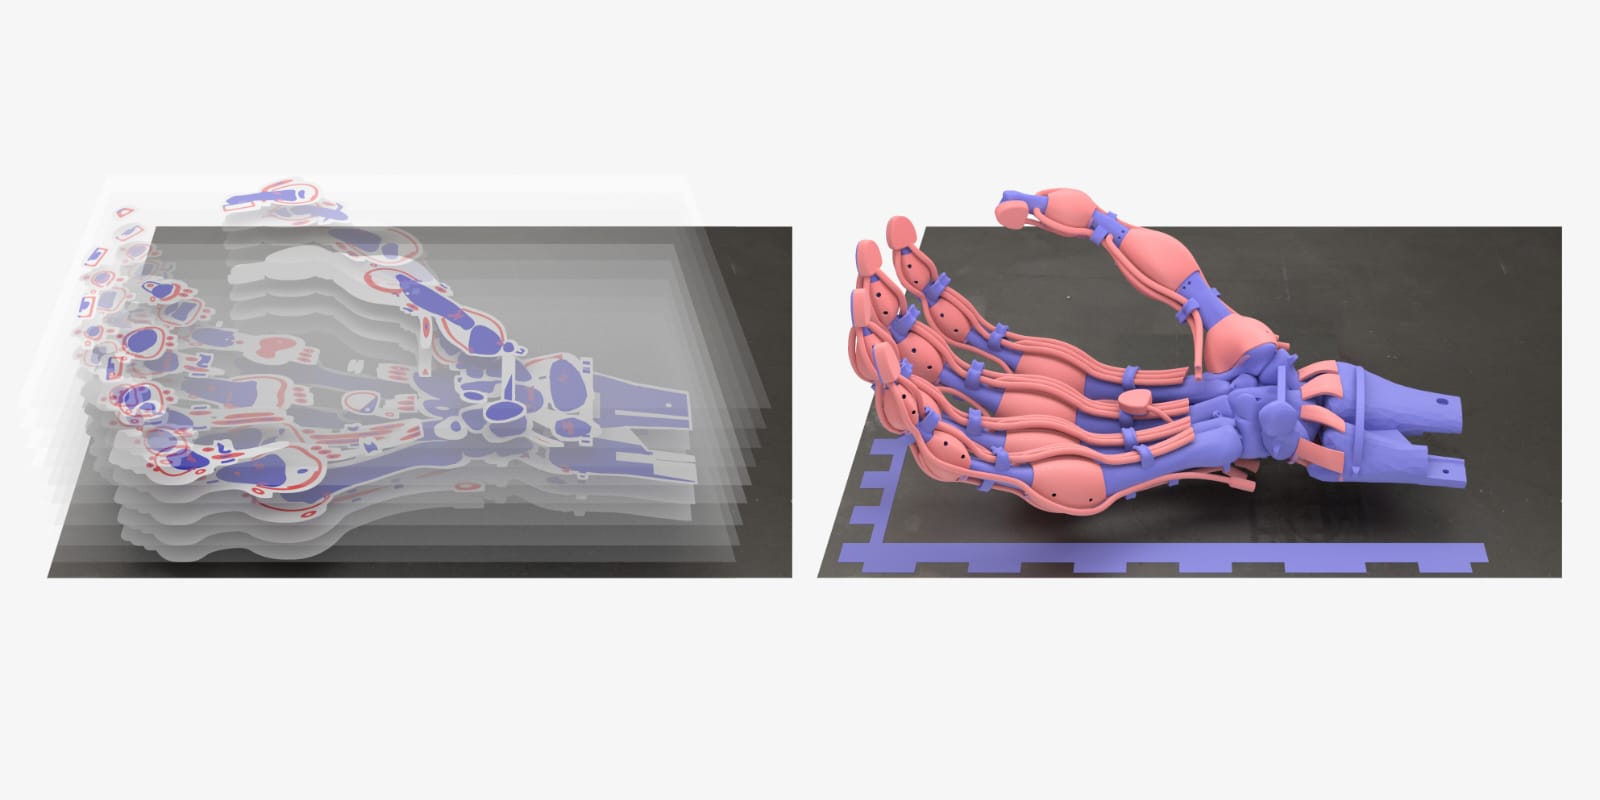 Fotografía facilitada por Inkbit 3D, de la pinza robótica impresa en 3D con forma de mano humana y controlada por 19 tendones del confundador de esta empresa y científico Javier Ramos. EFE